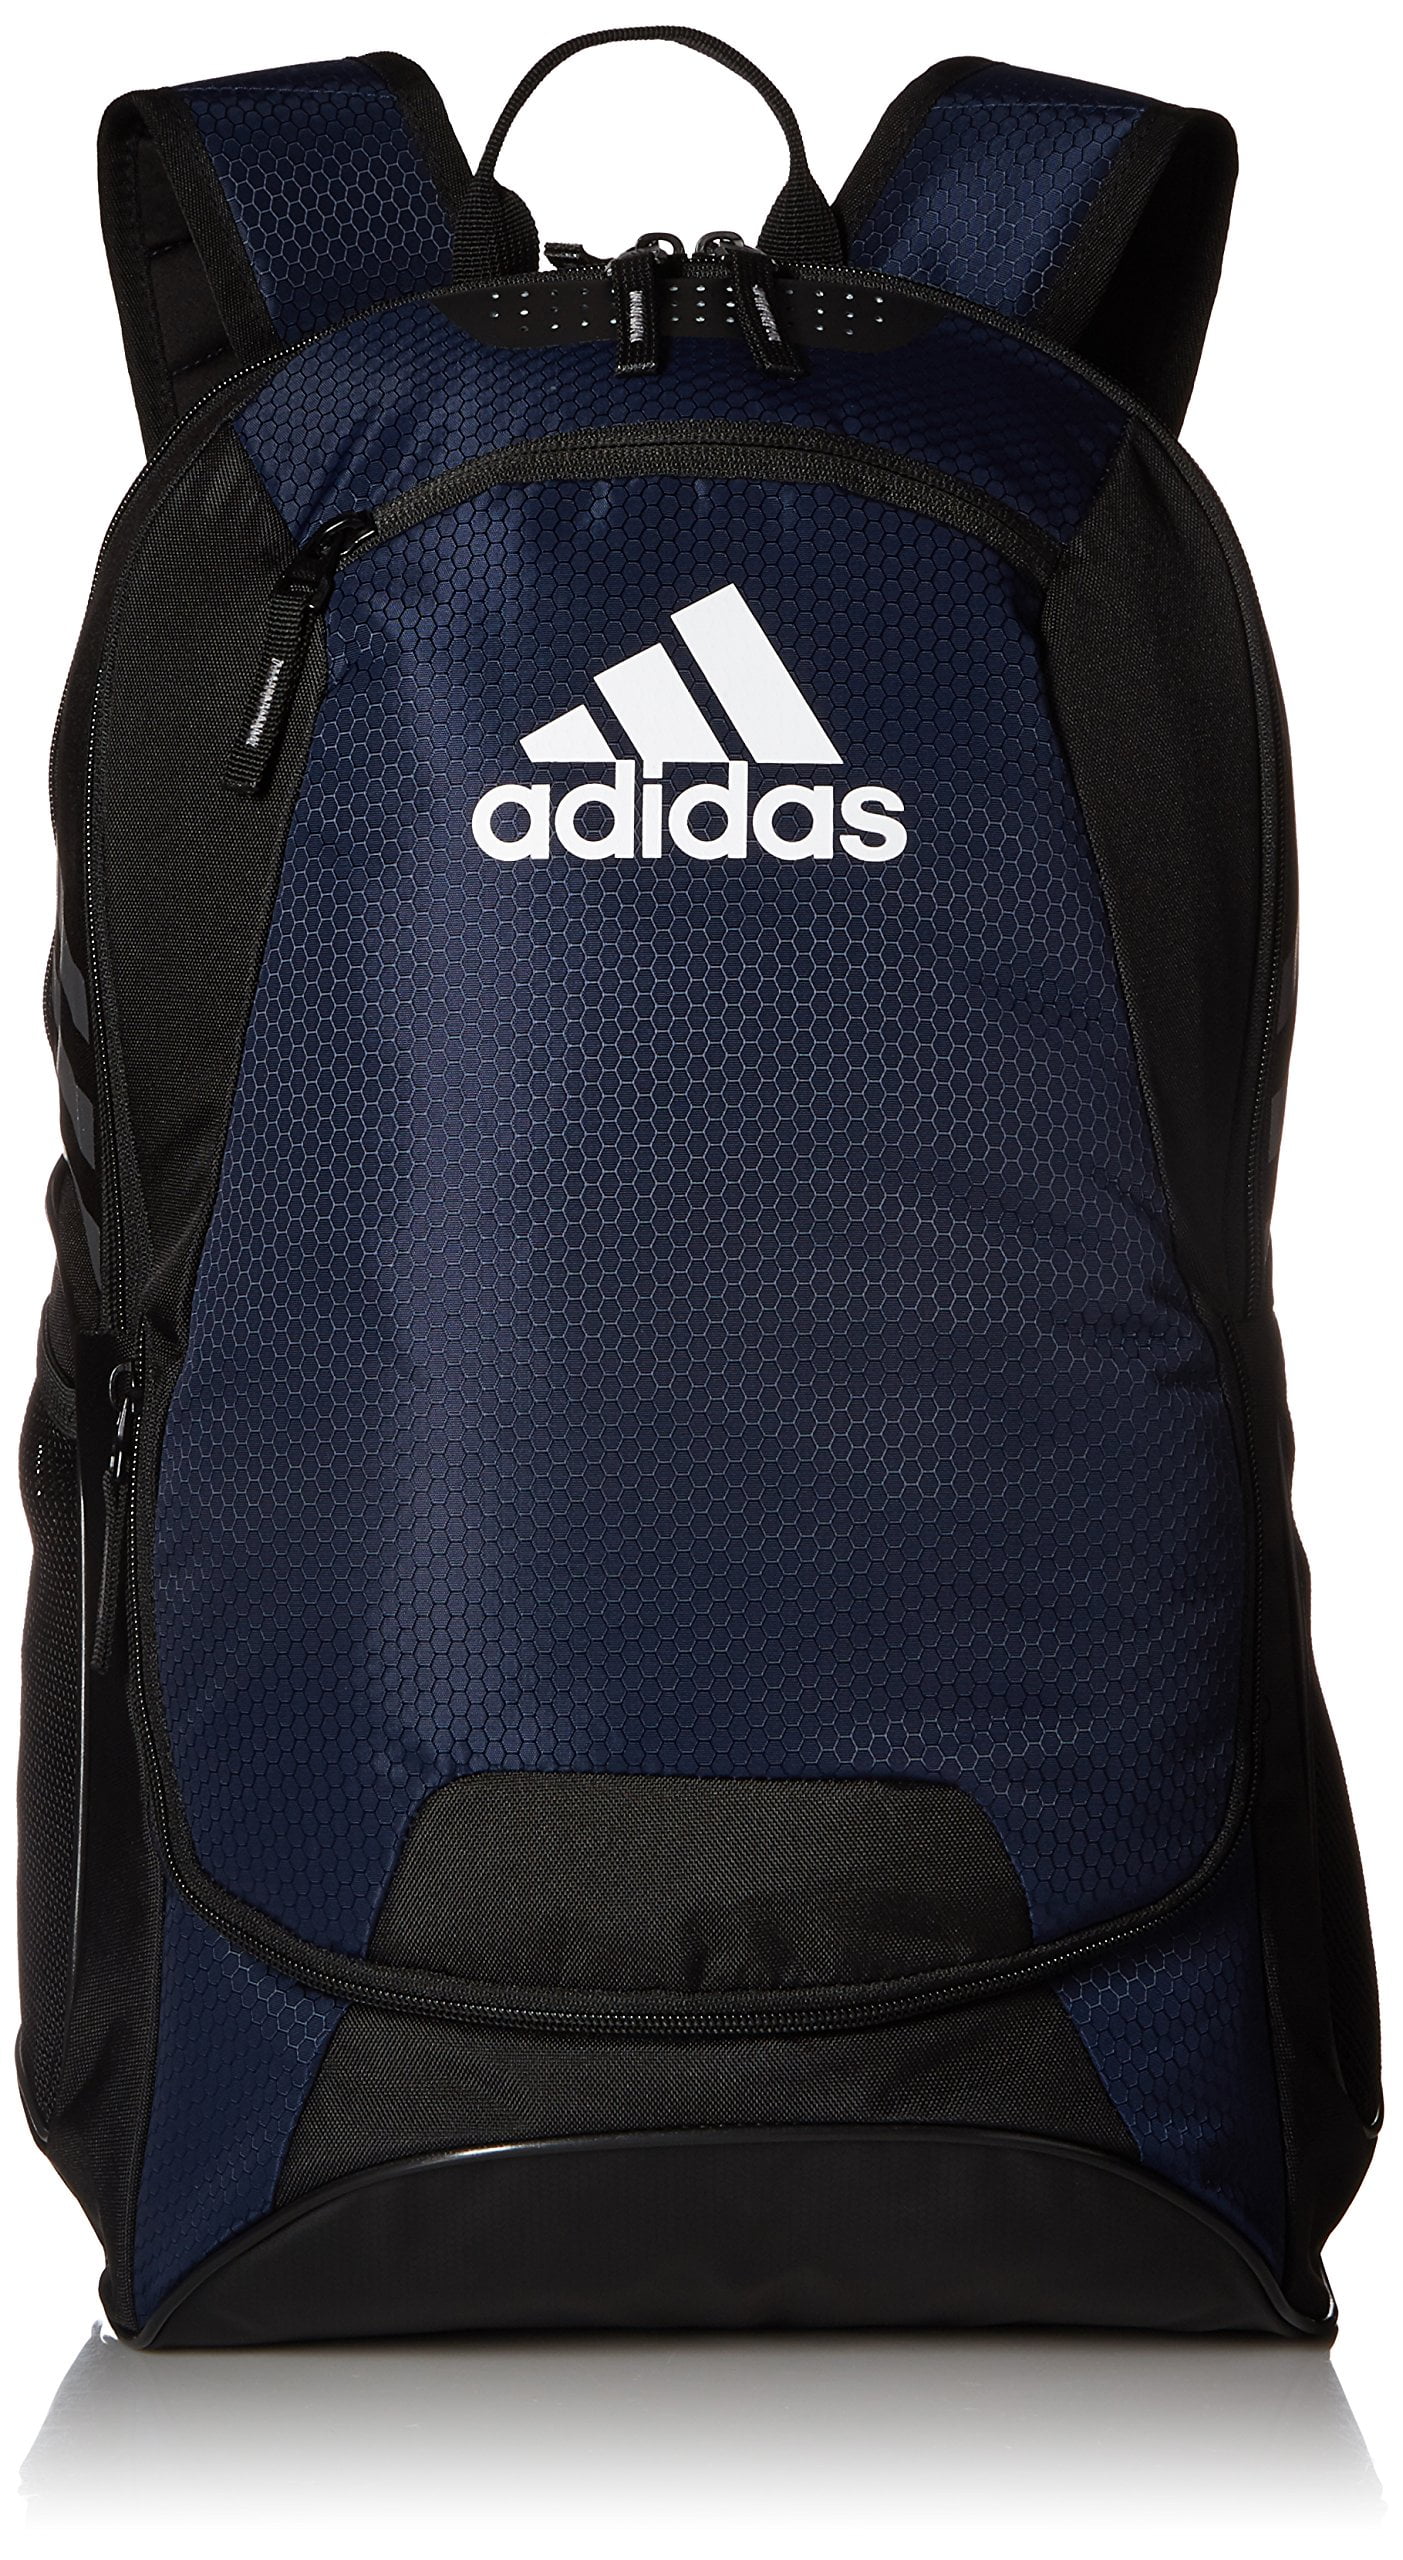 adidas stadium 11 backpack